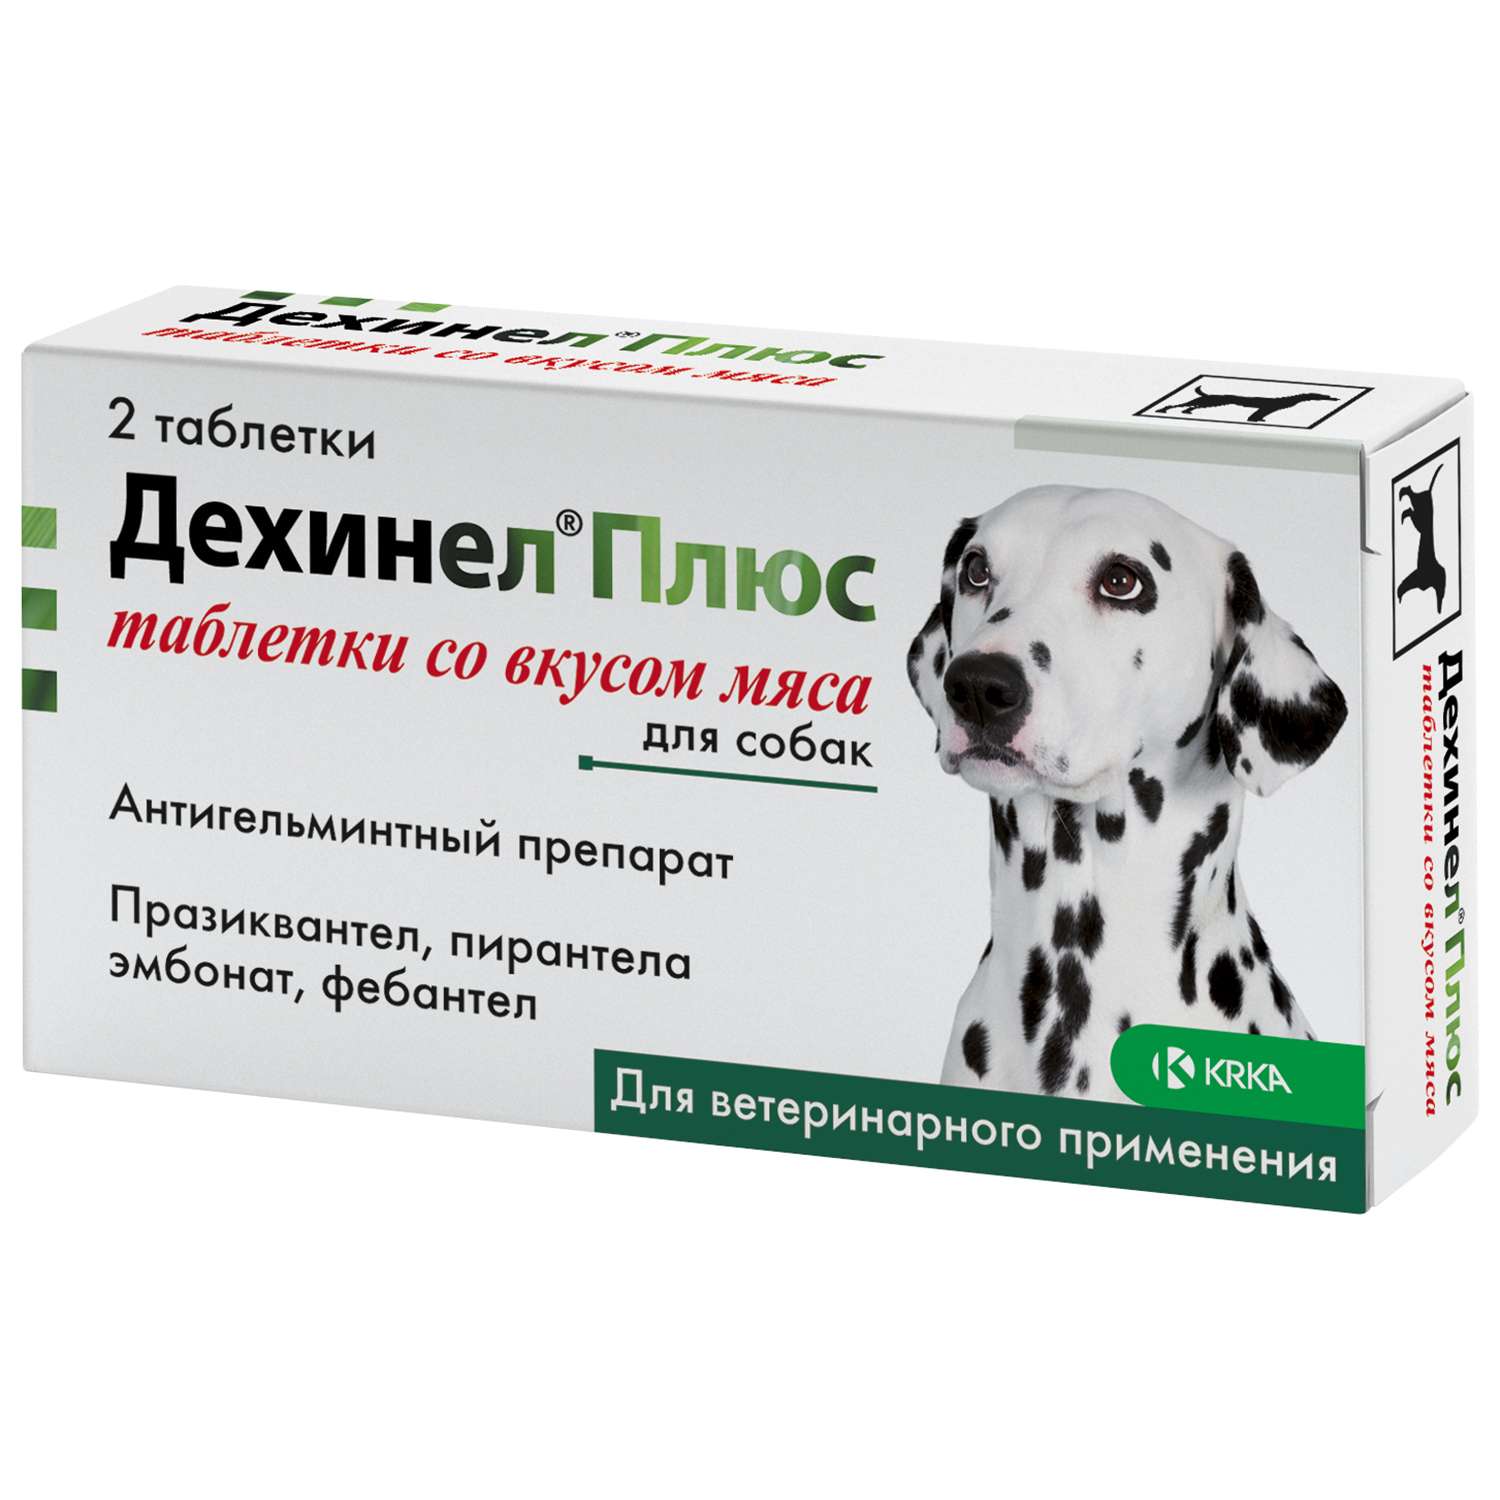 Антигельминтик для собак KRKA Дехинел плюс №2 таблетки со вкусом мяса - фото 1